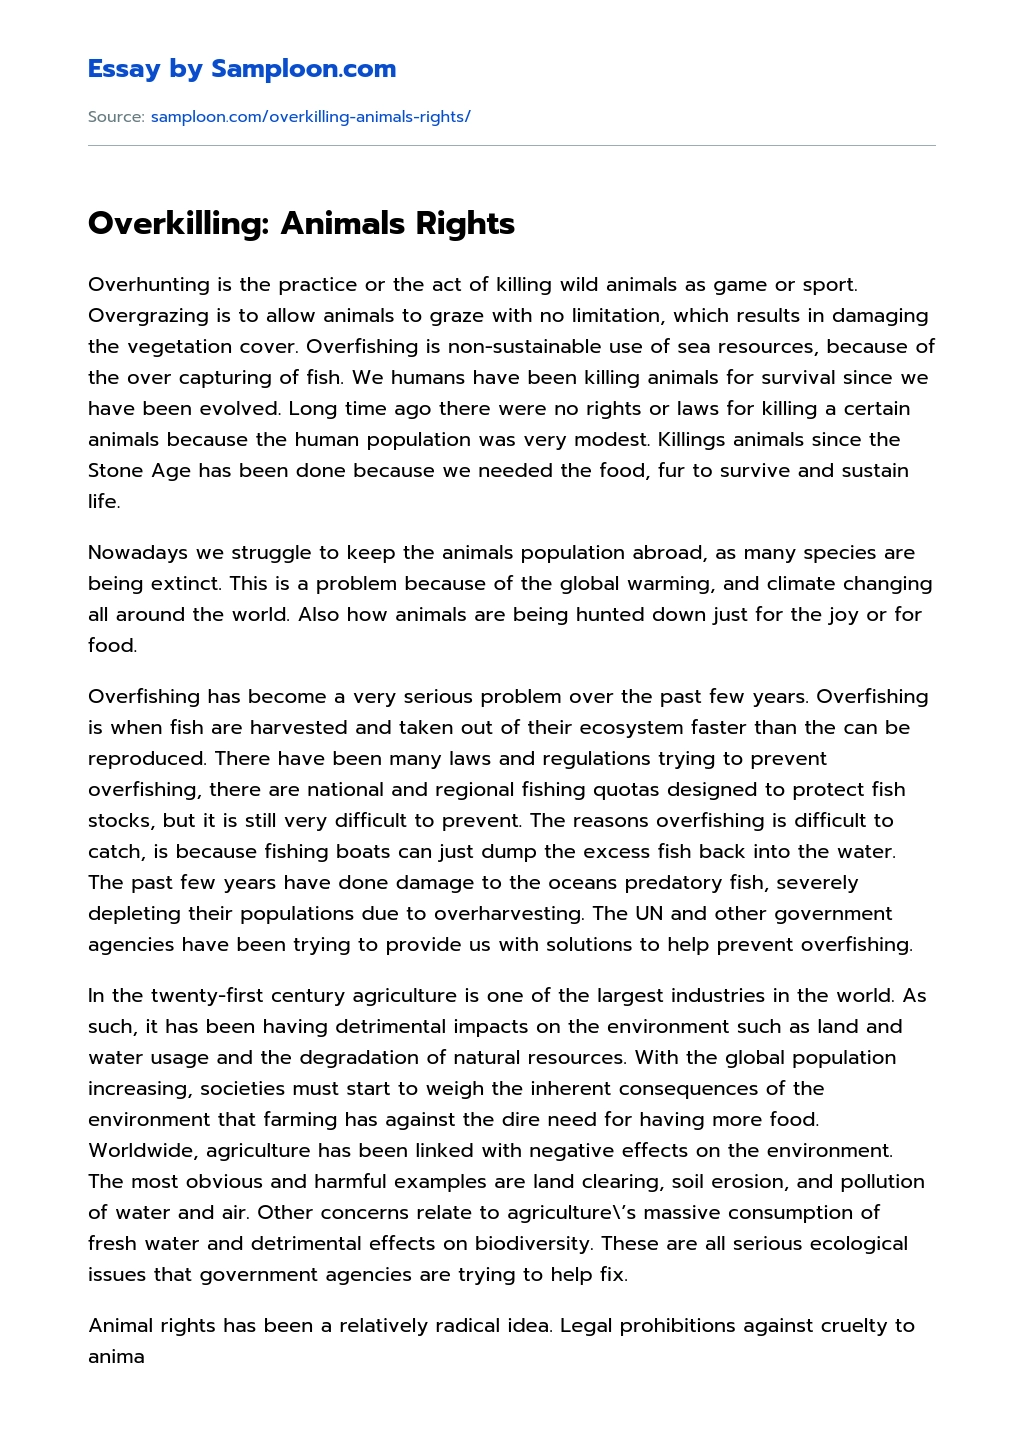 Overkilling: Animals Rights essay